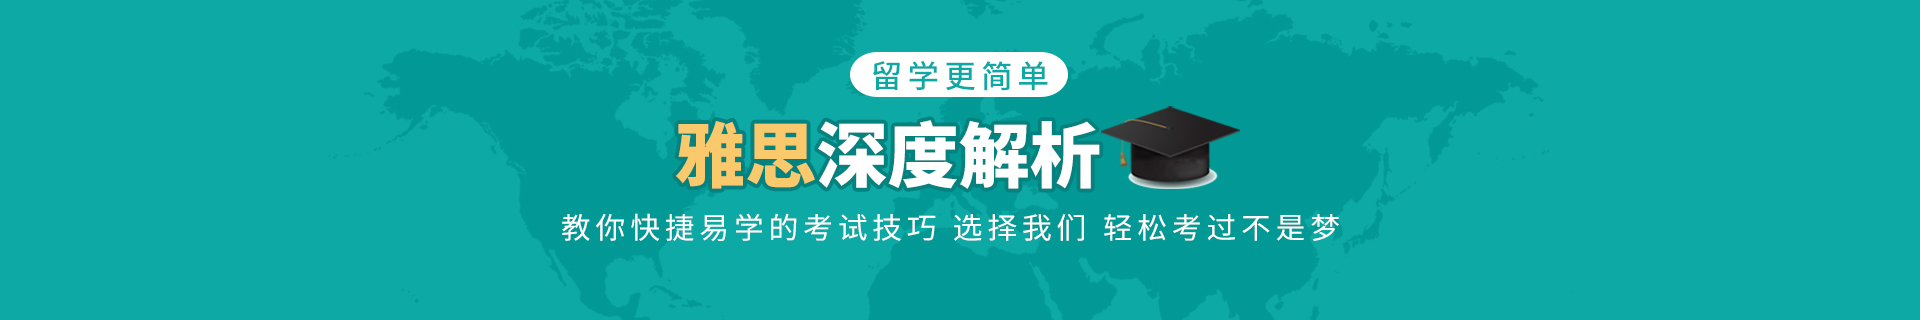 北京朝阳国贸环球教育培训机构